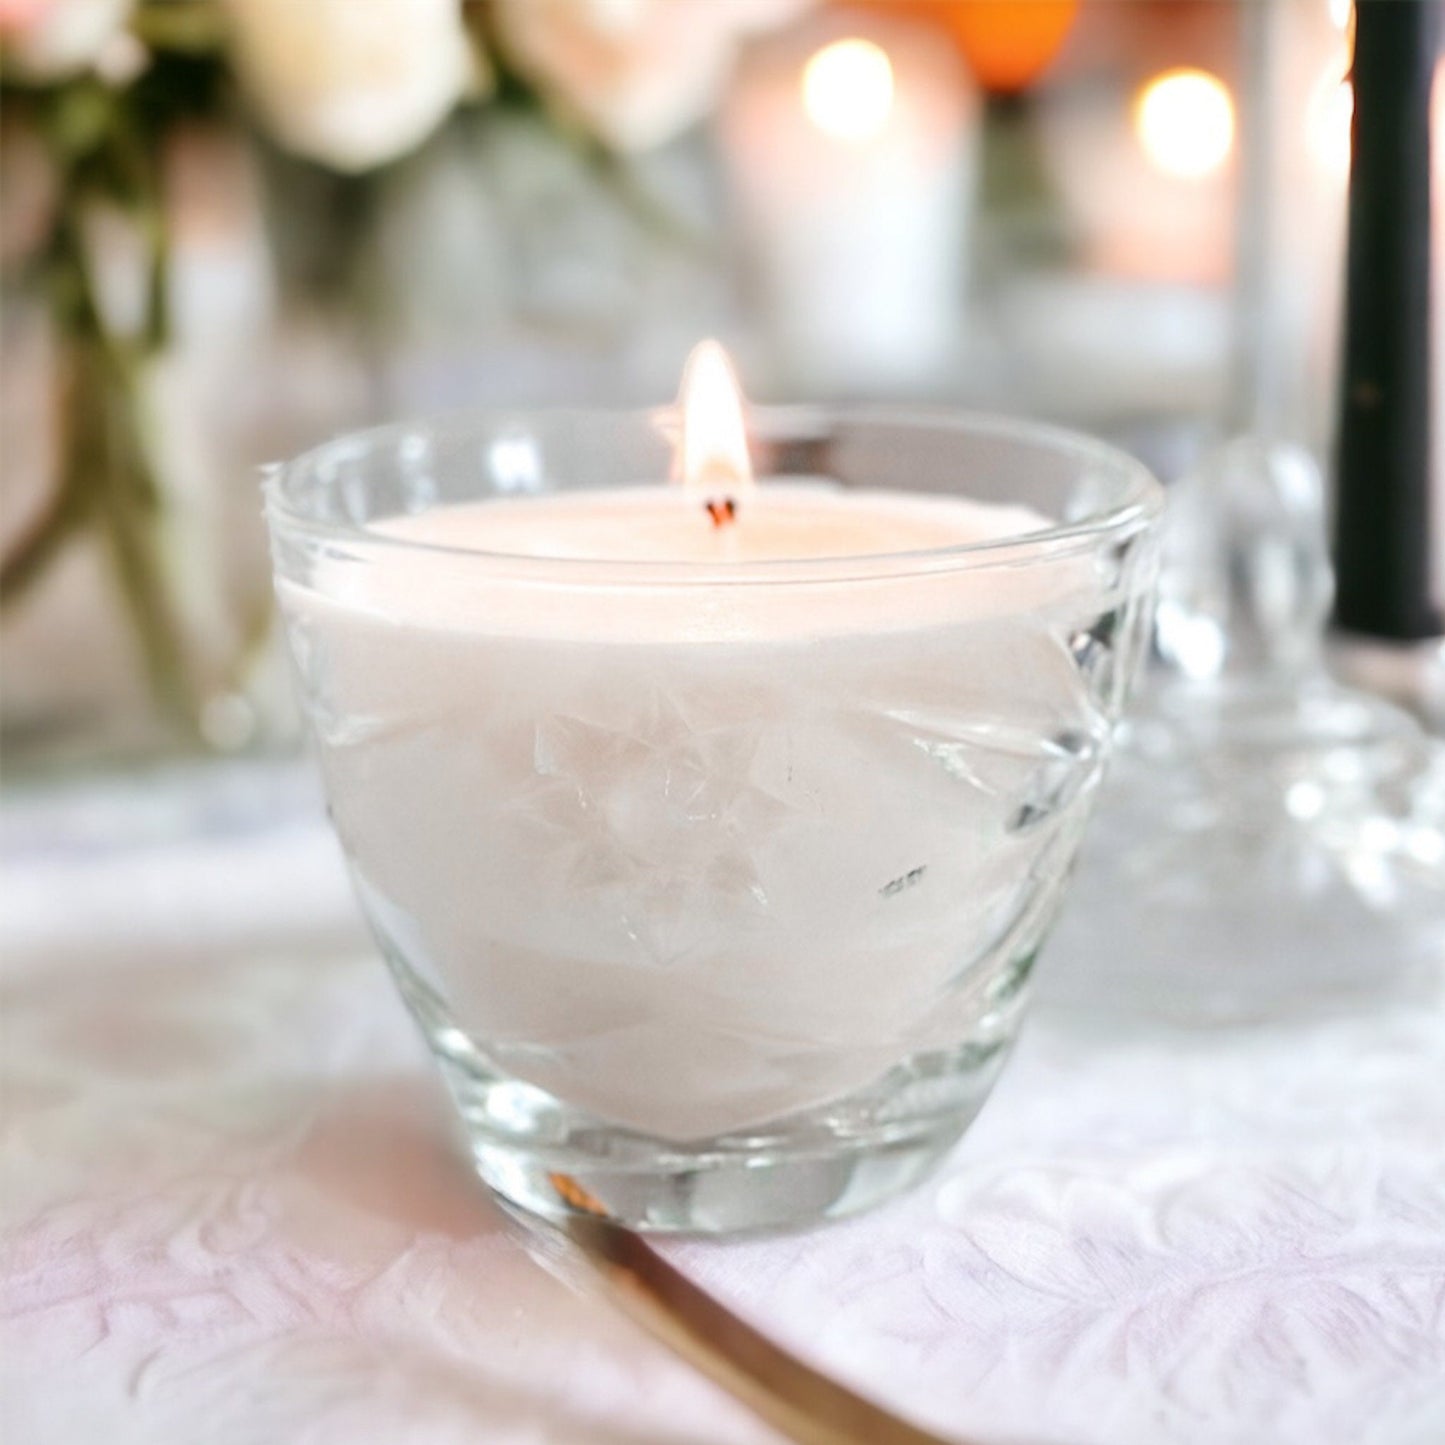 Lavender Vanilla Soy Candle in Vintage Sugar Dish